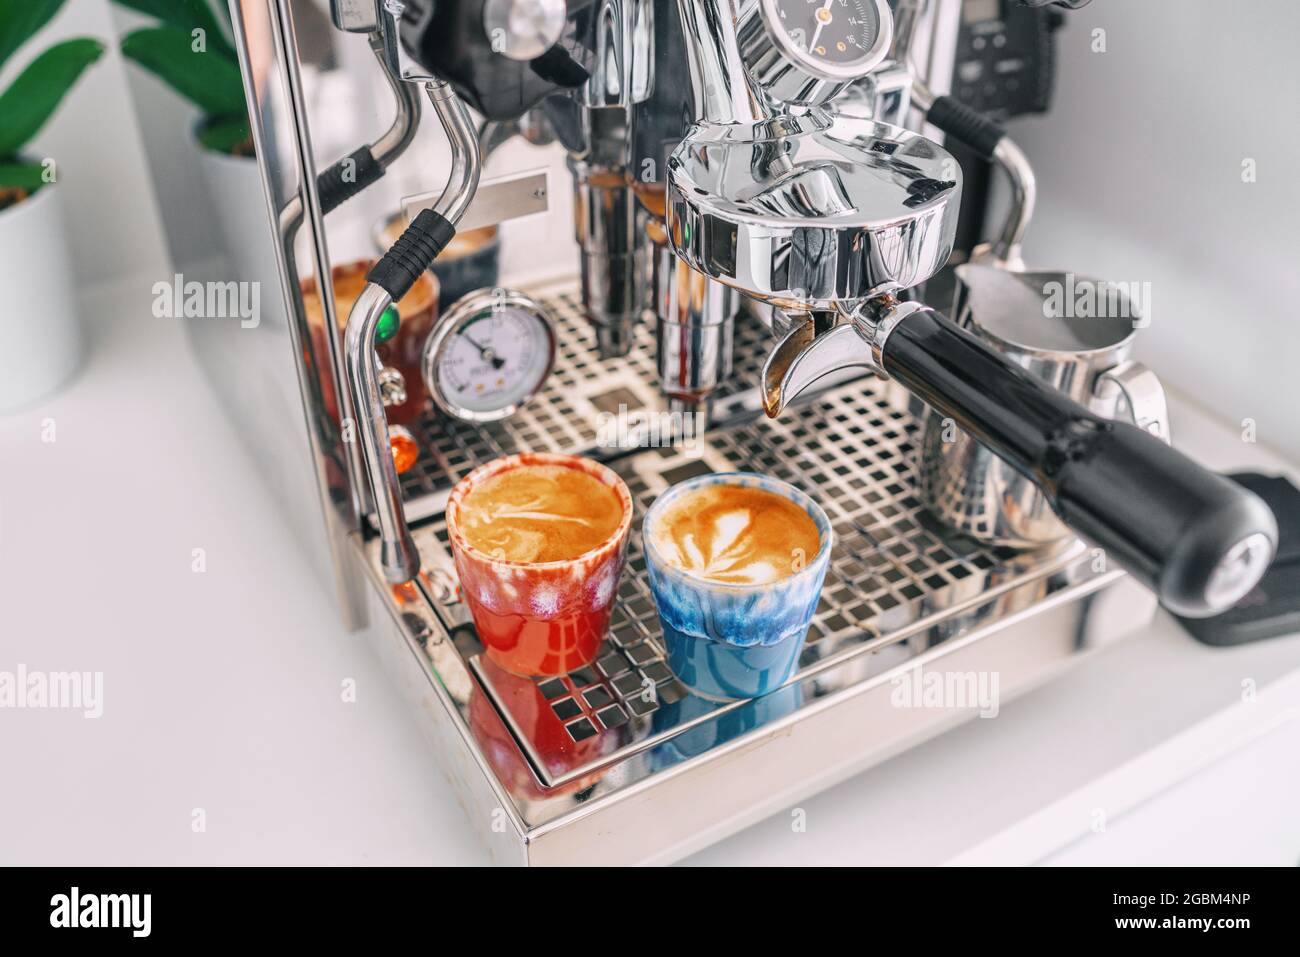 Zwei Macchiato-Shots in Espressotassen auf der Kaffeemaschine zu Hause - weiße Wohnküche, moderner Interieur-Lifestyle Stockfoto